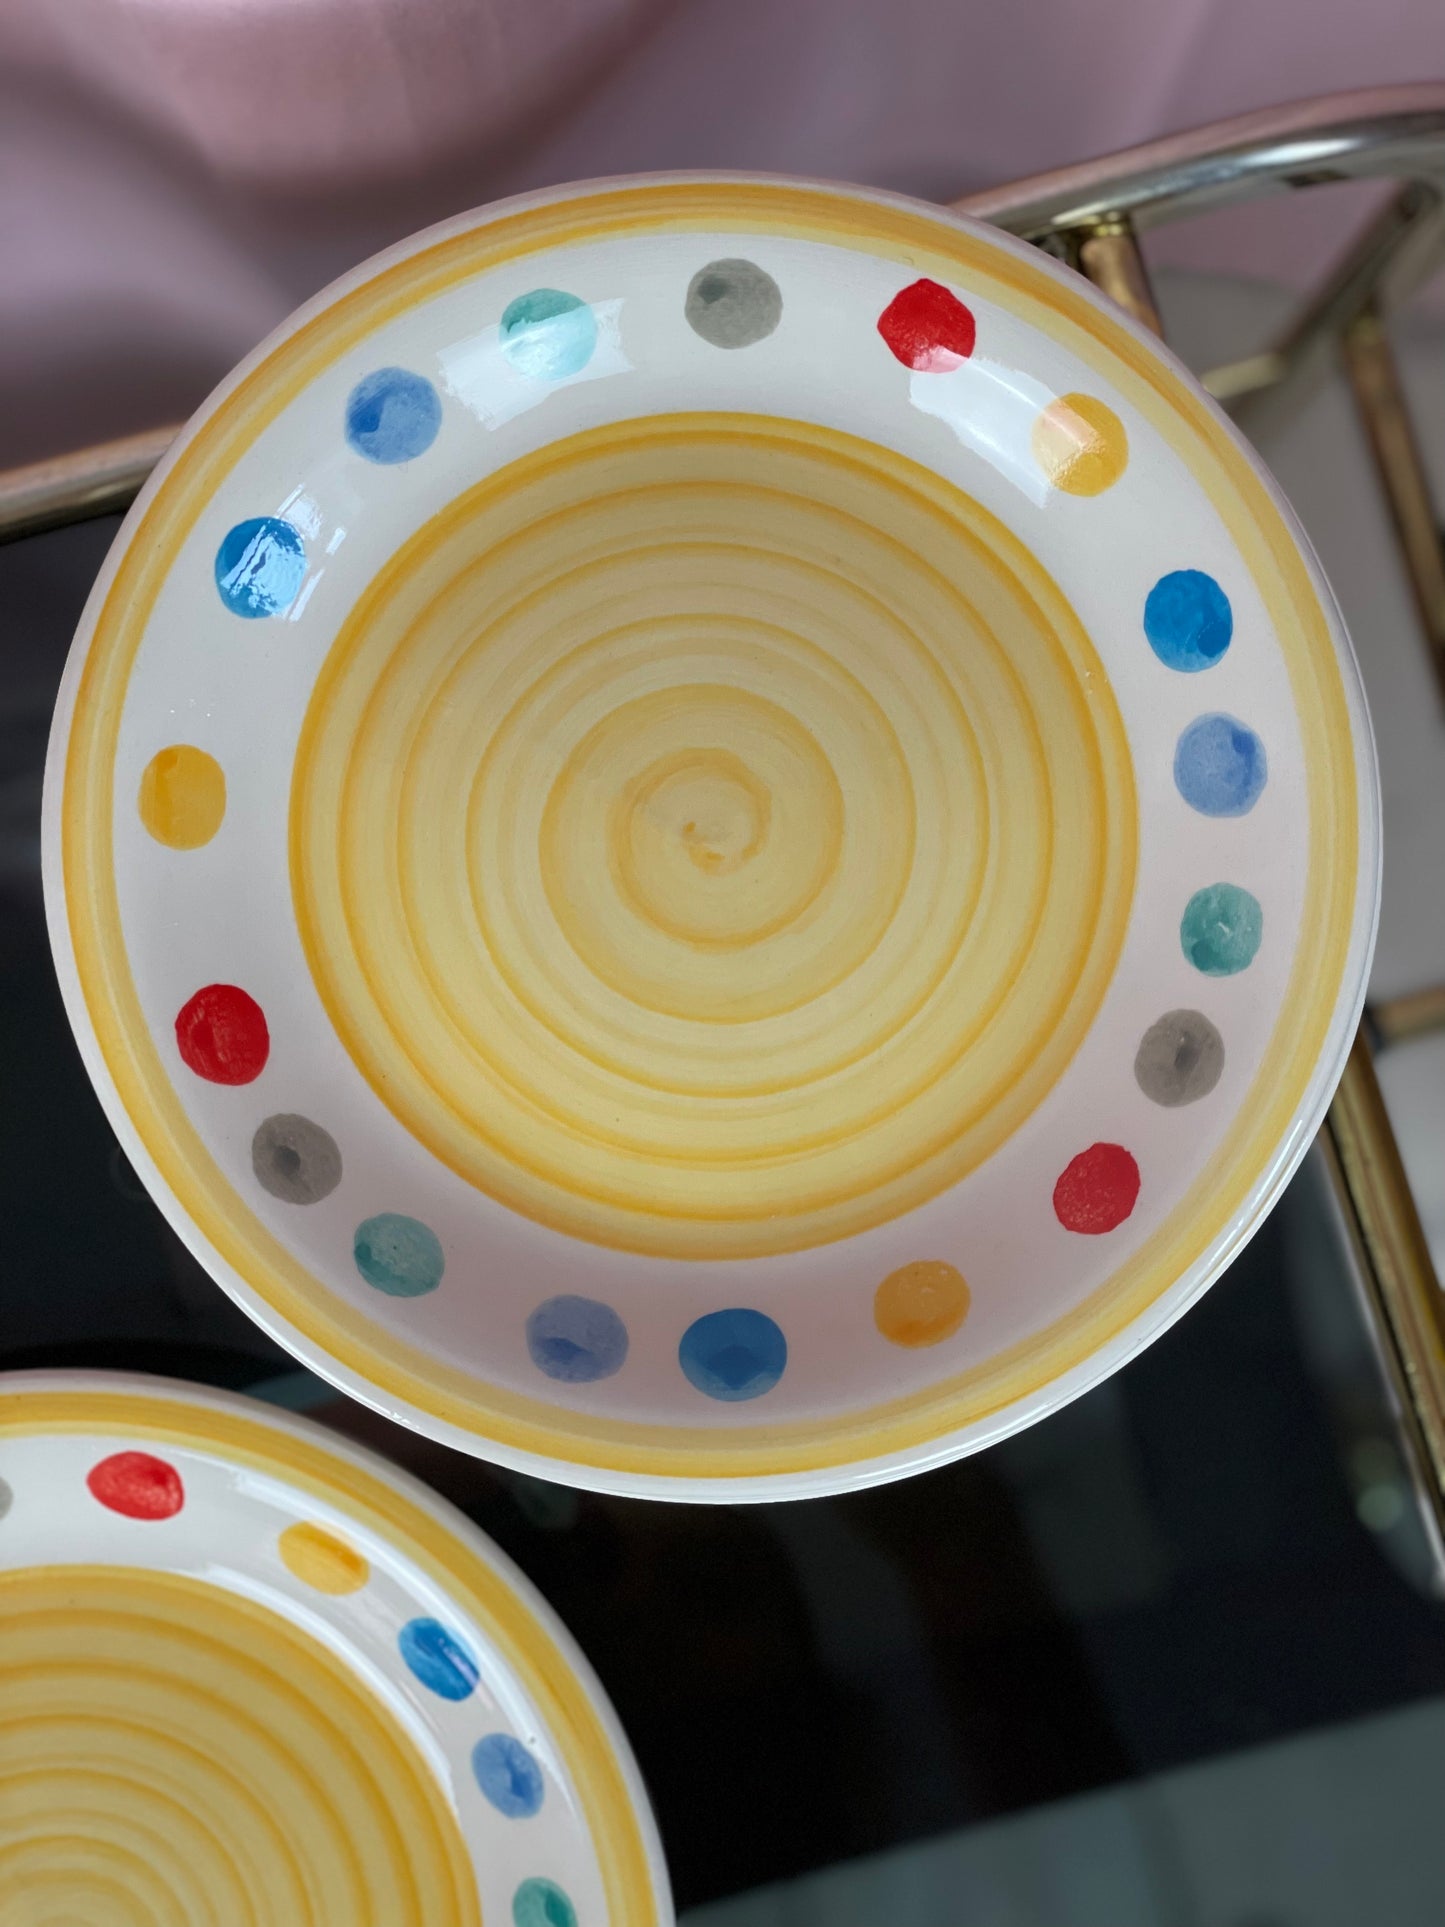 Breakfast plates - Tivoli style